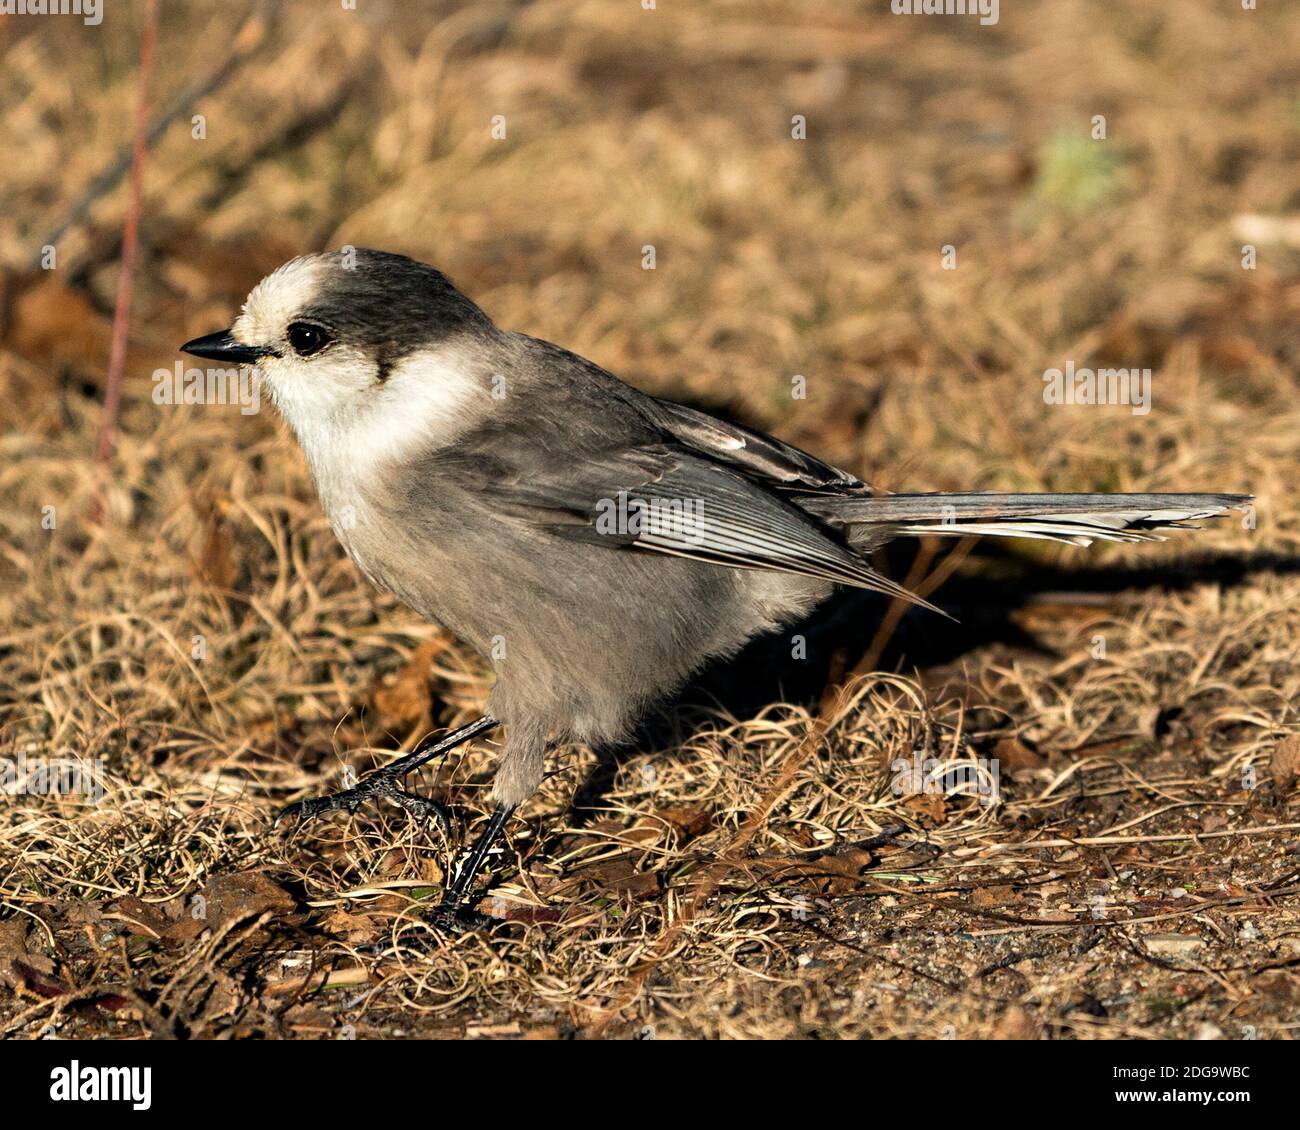 Vista ravvicinata del profilo Gray Jay sul terreno nel suo ambiente e habitat, con piumaggio grigio e coda di uccelli. Immagine. Immagine. Verticale. GRA Foto Stock